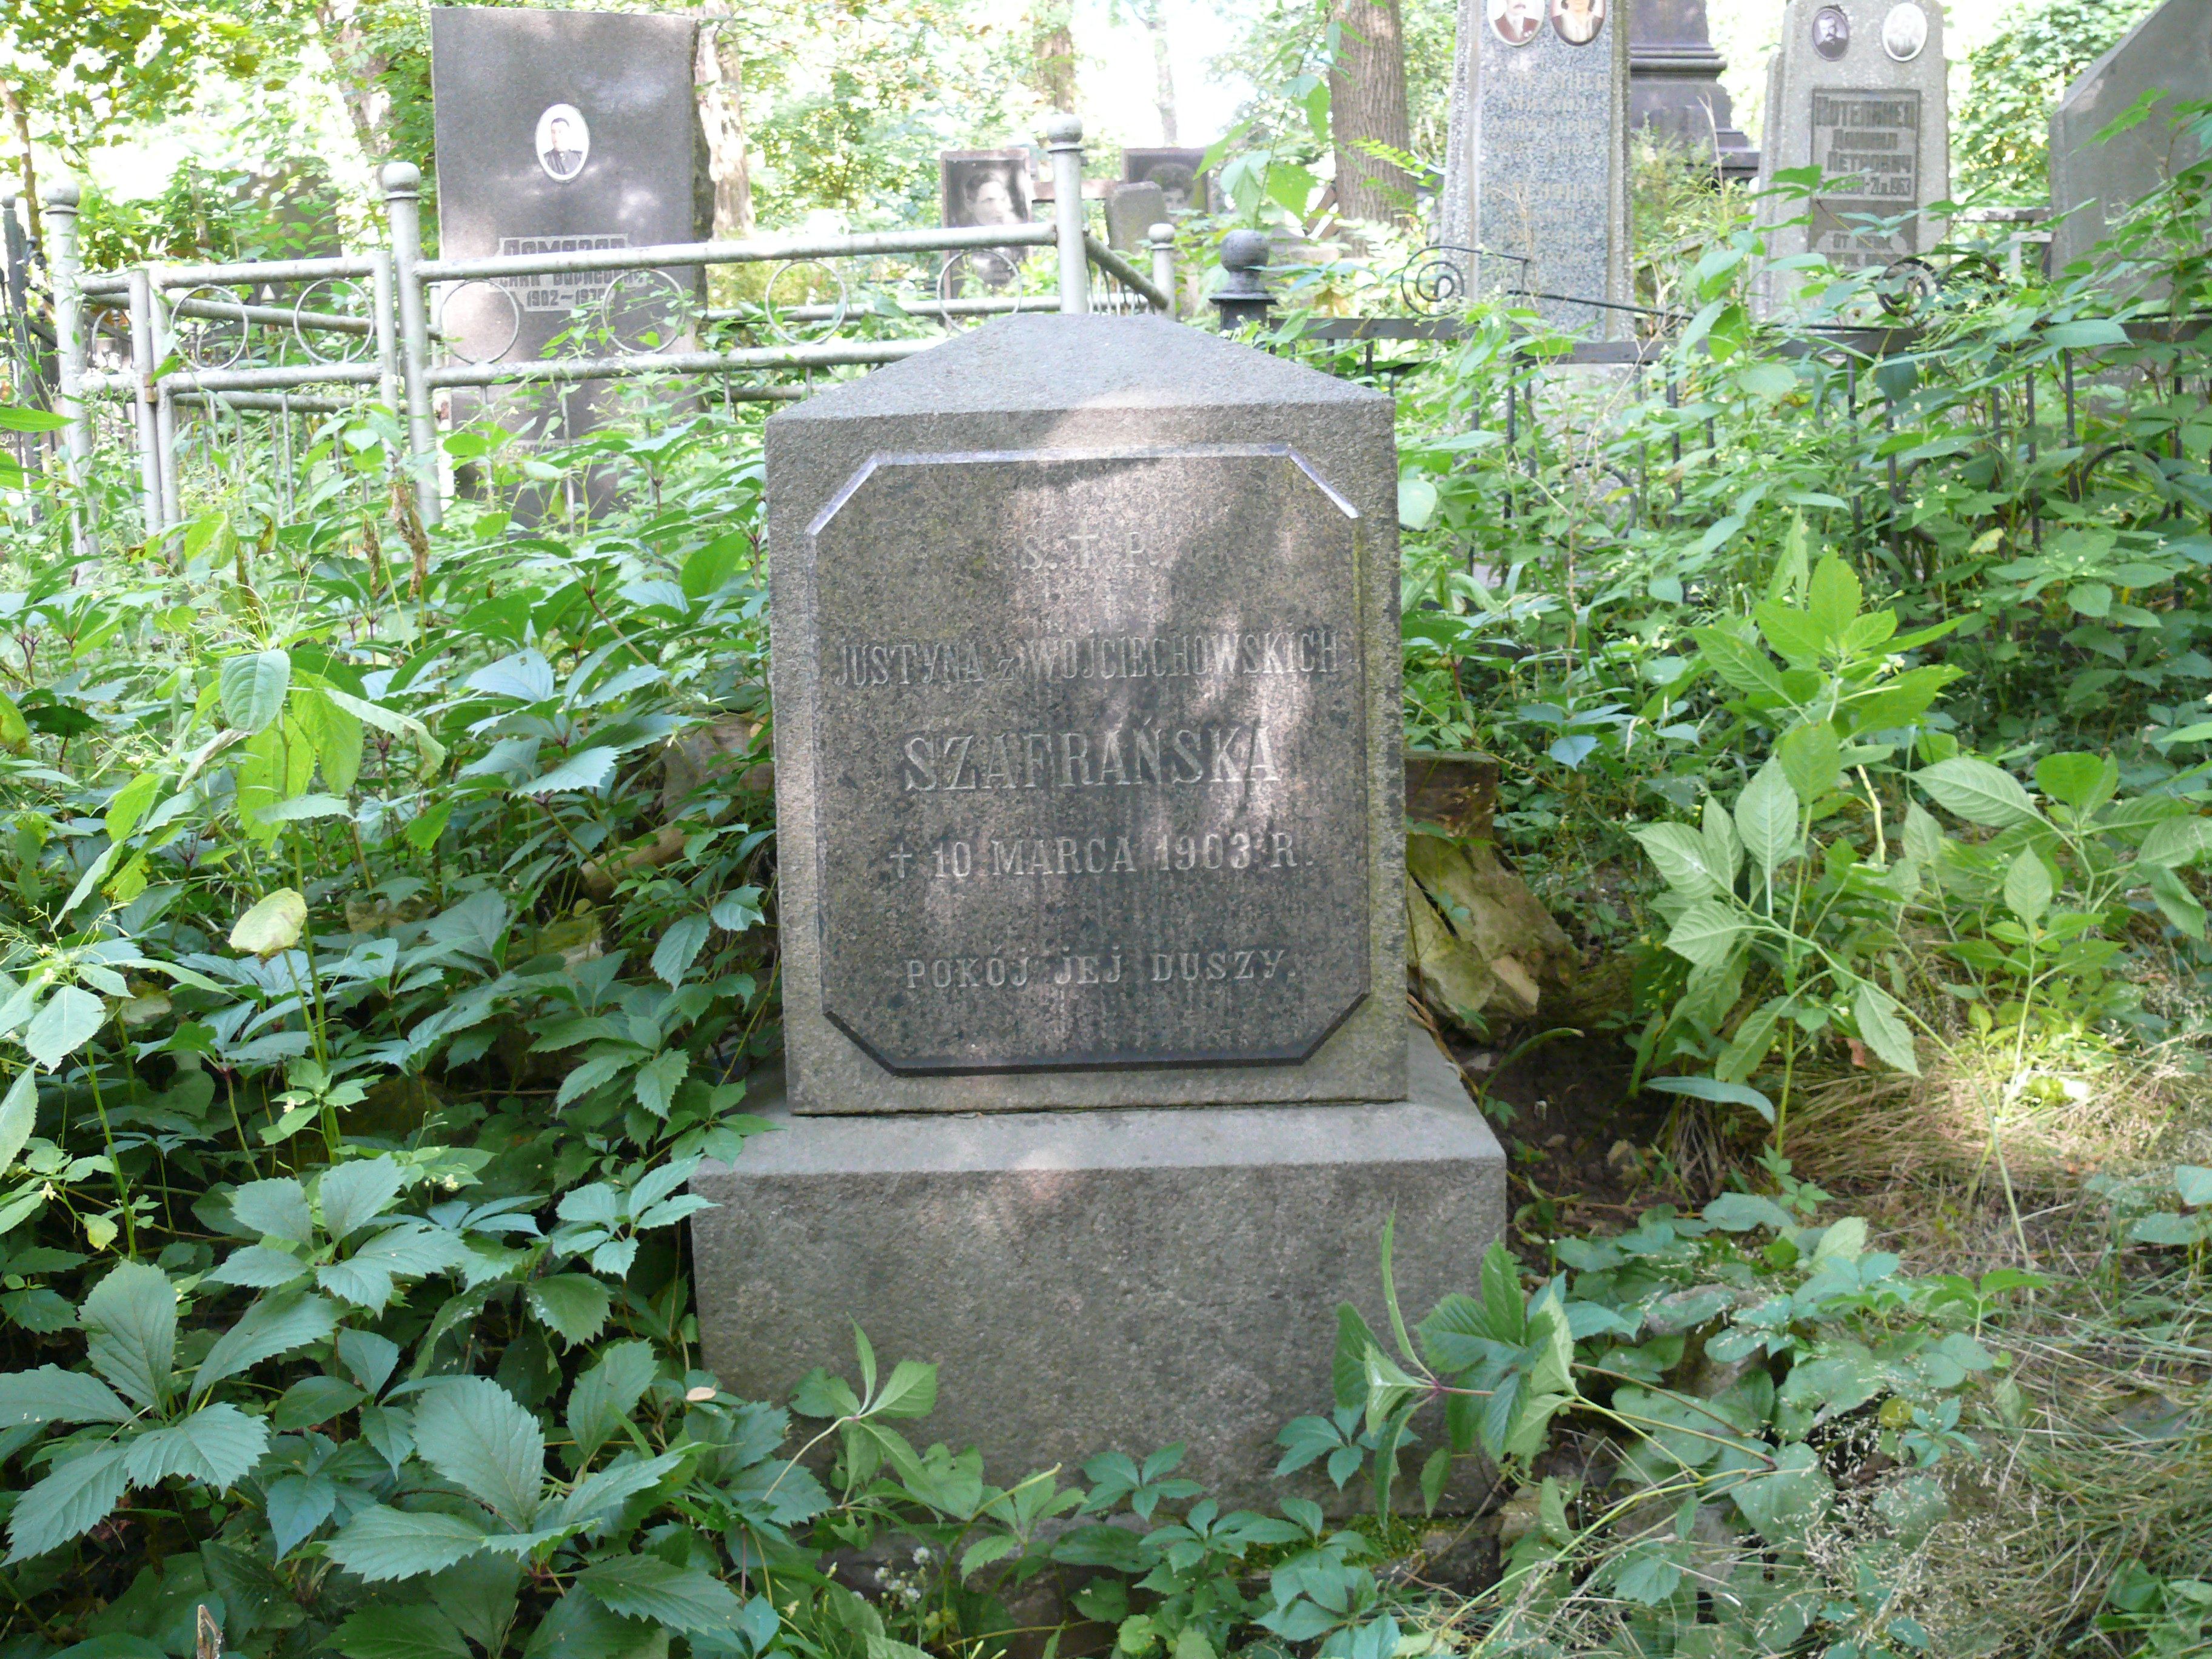 Tombstone of Justyna Szafranska, Bajkova cemetery, Kyiv, as of 2021